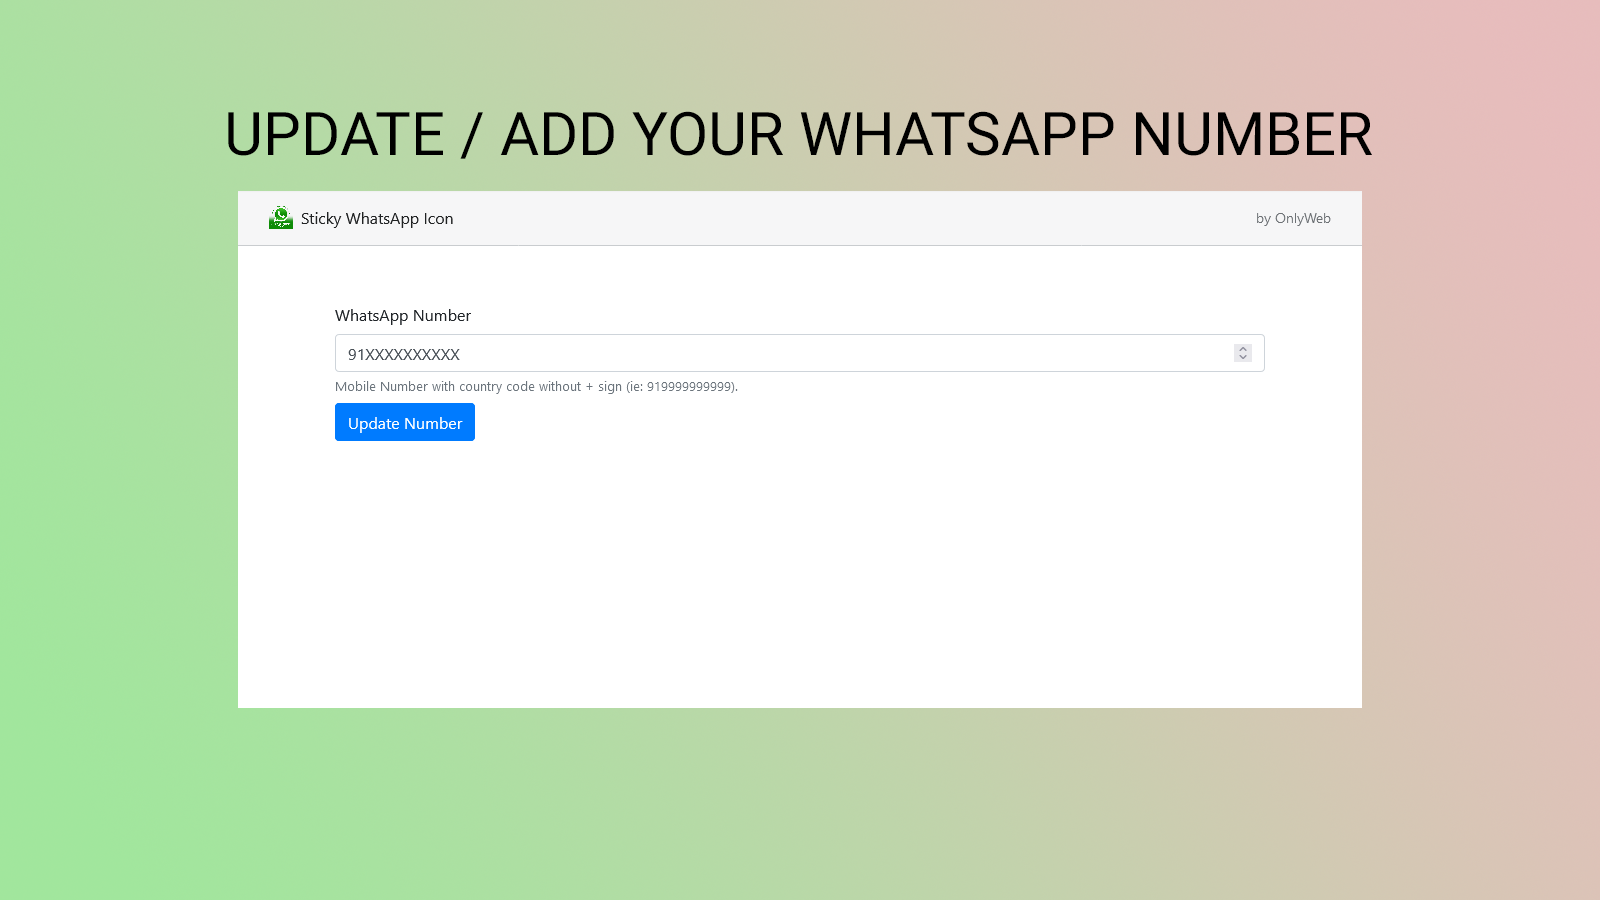 WhatsApp Sticky Icon für Kundensupport